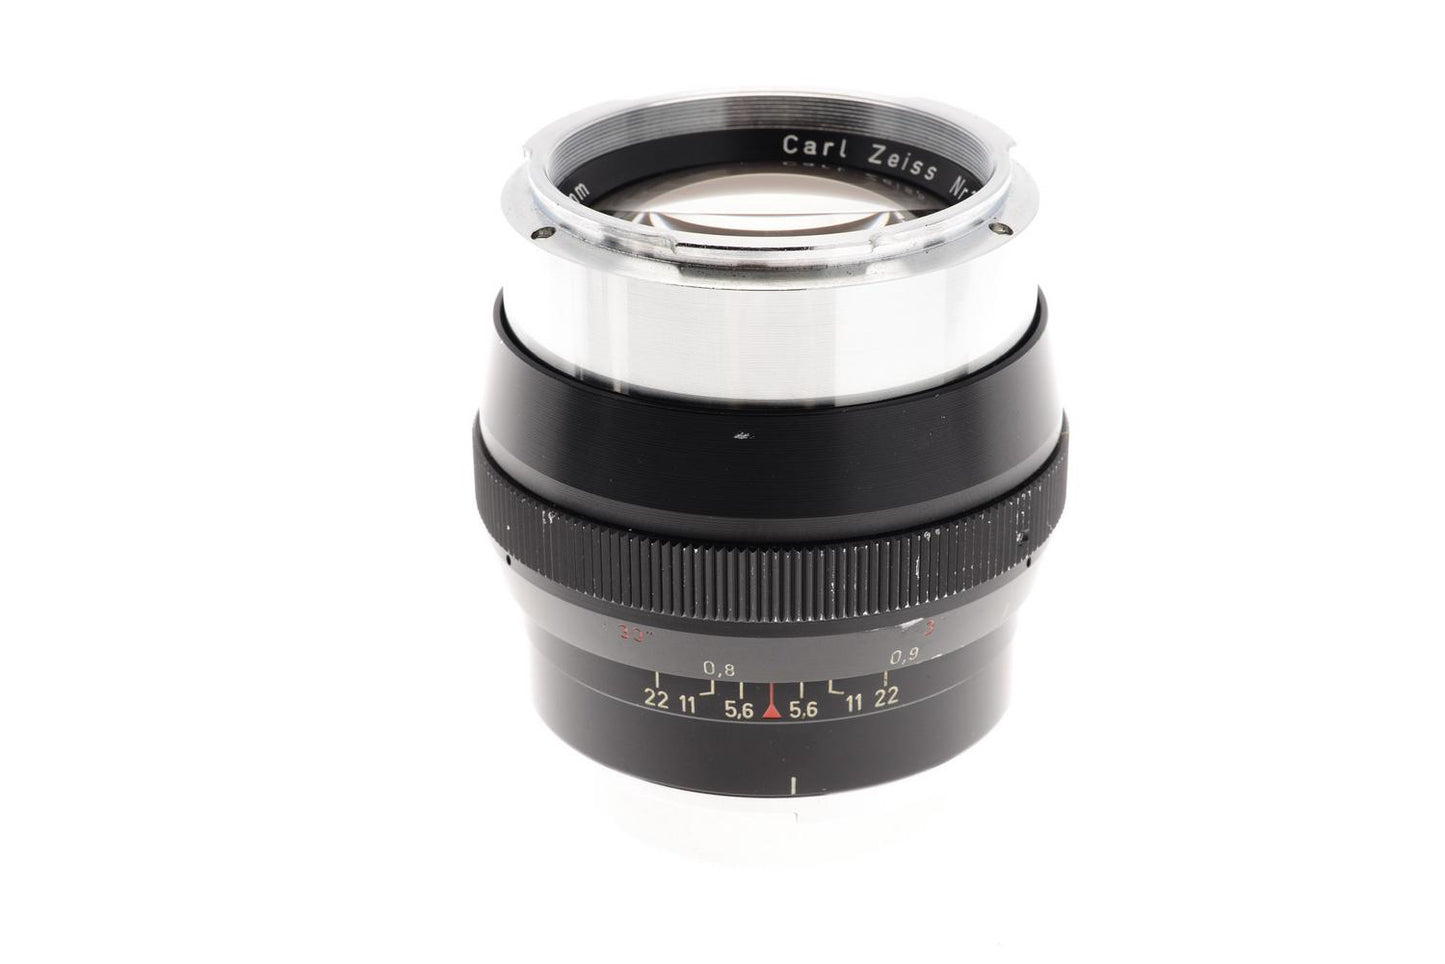 Carl Zeiss 85mm f2 Sonnar - Lens